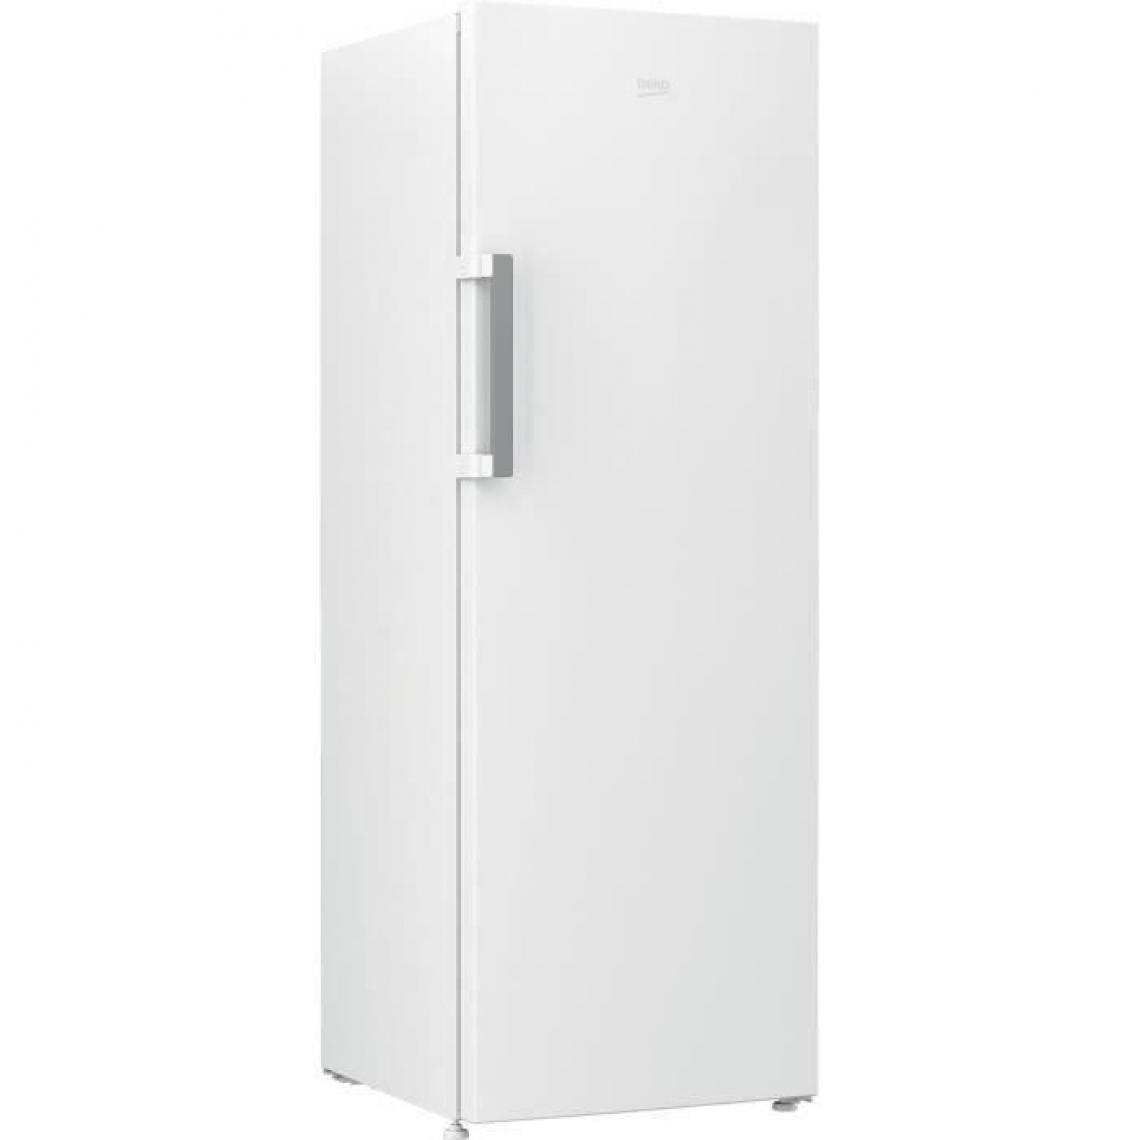 Beko - Réfrigérateur tout utile - RES44NWN - 375 L - Froid brassé - No Frost - A+ - Blanc - Réfrigérateur